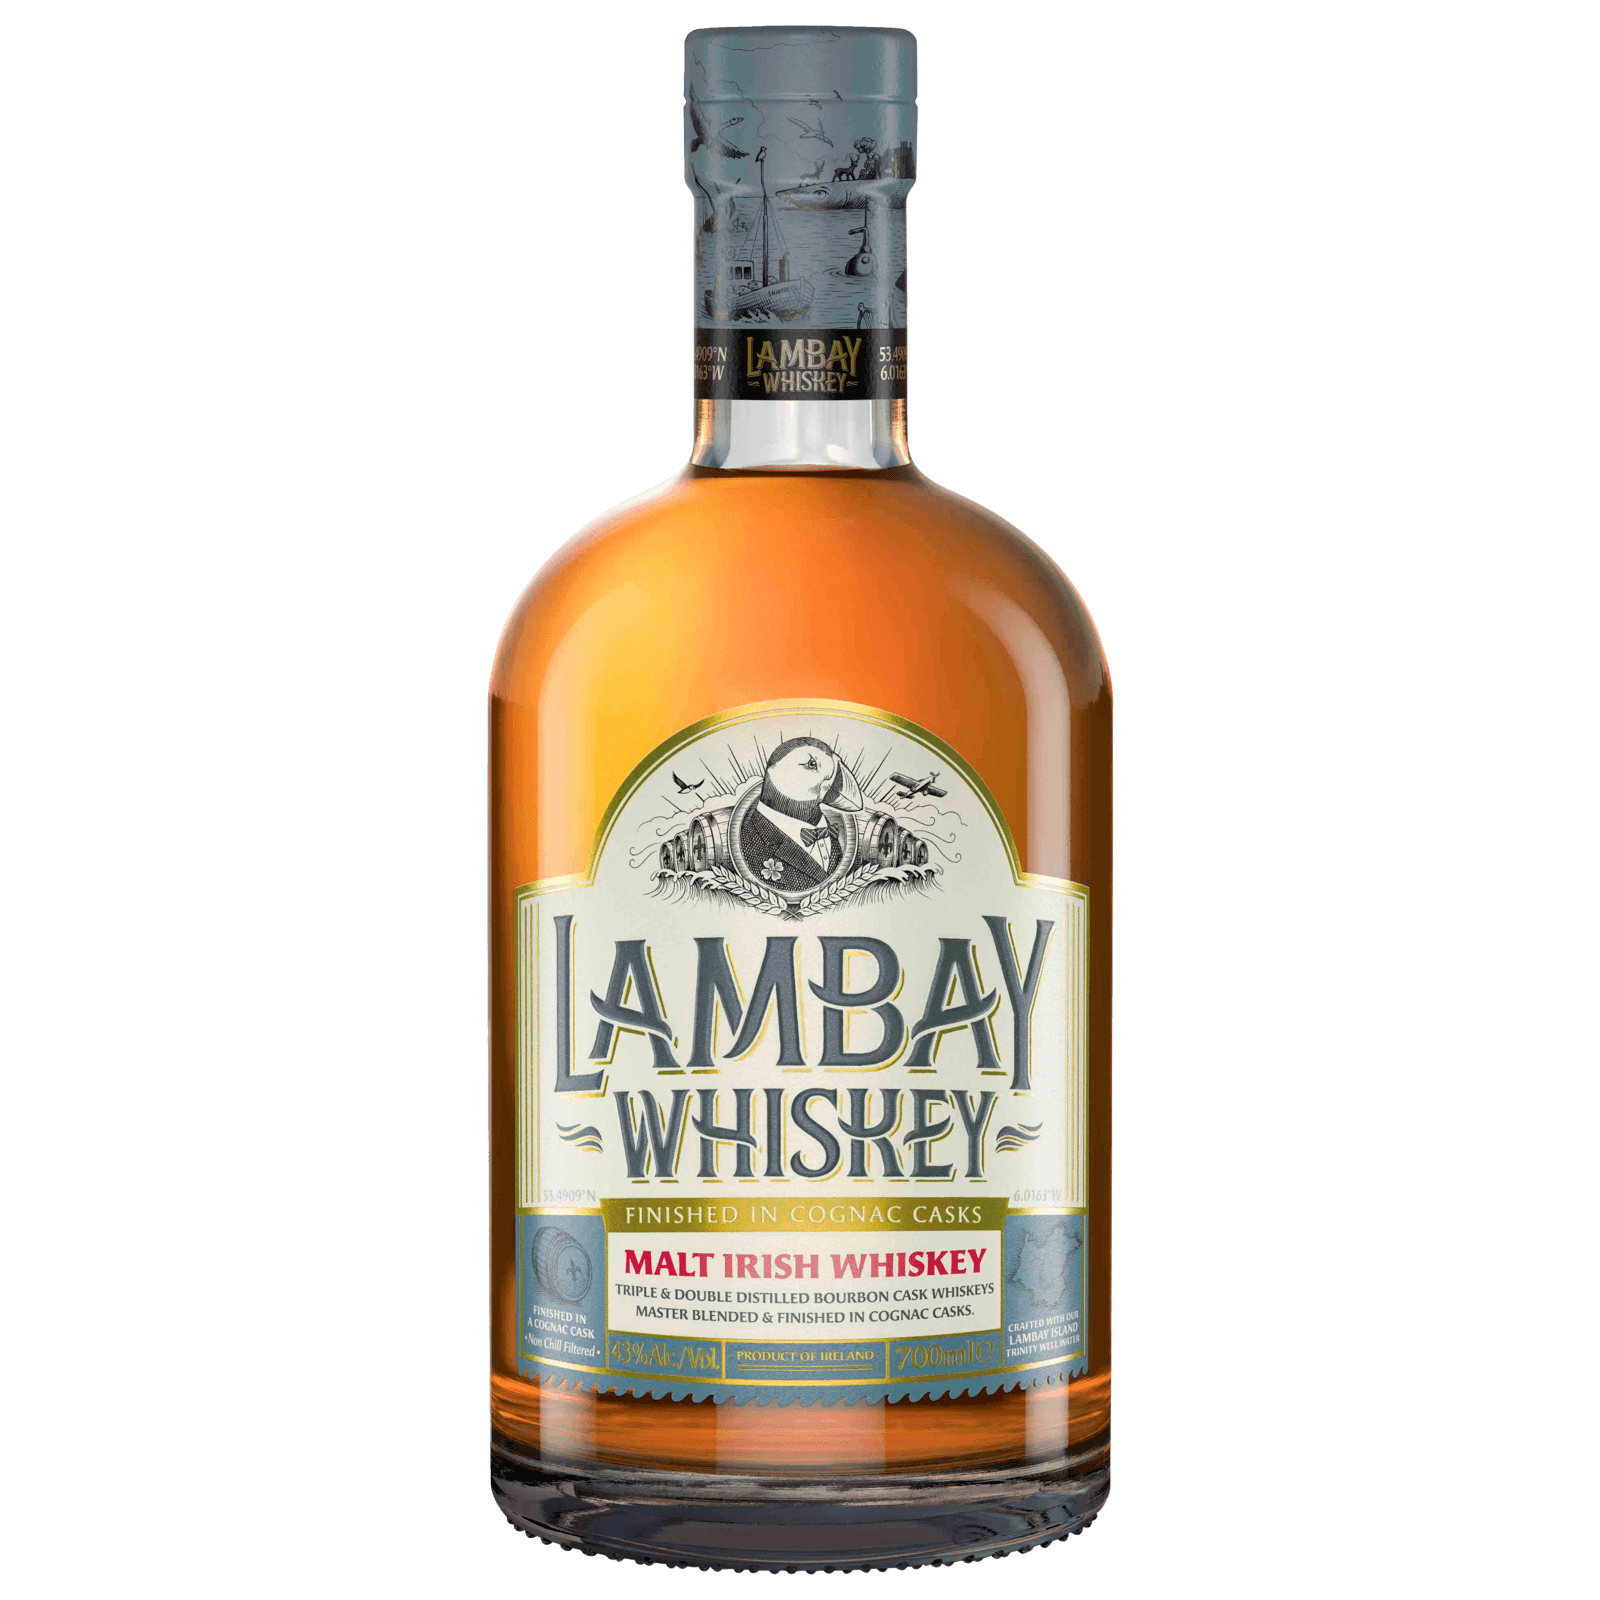 Виски Lambay Malt Irish Whiskey. Lambay Whiskey Single Malt. Виски Lambay small batch Blend. Виски "Lambay" Malt Irish Whiskey, Gift Box, 0.7 л. Irish malt